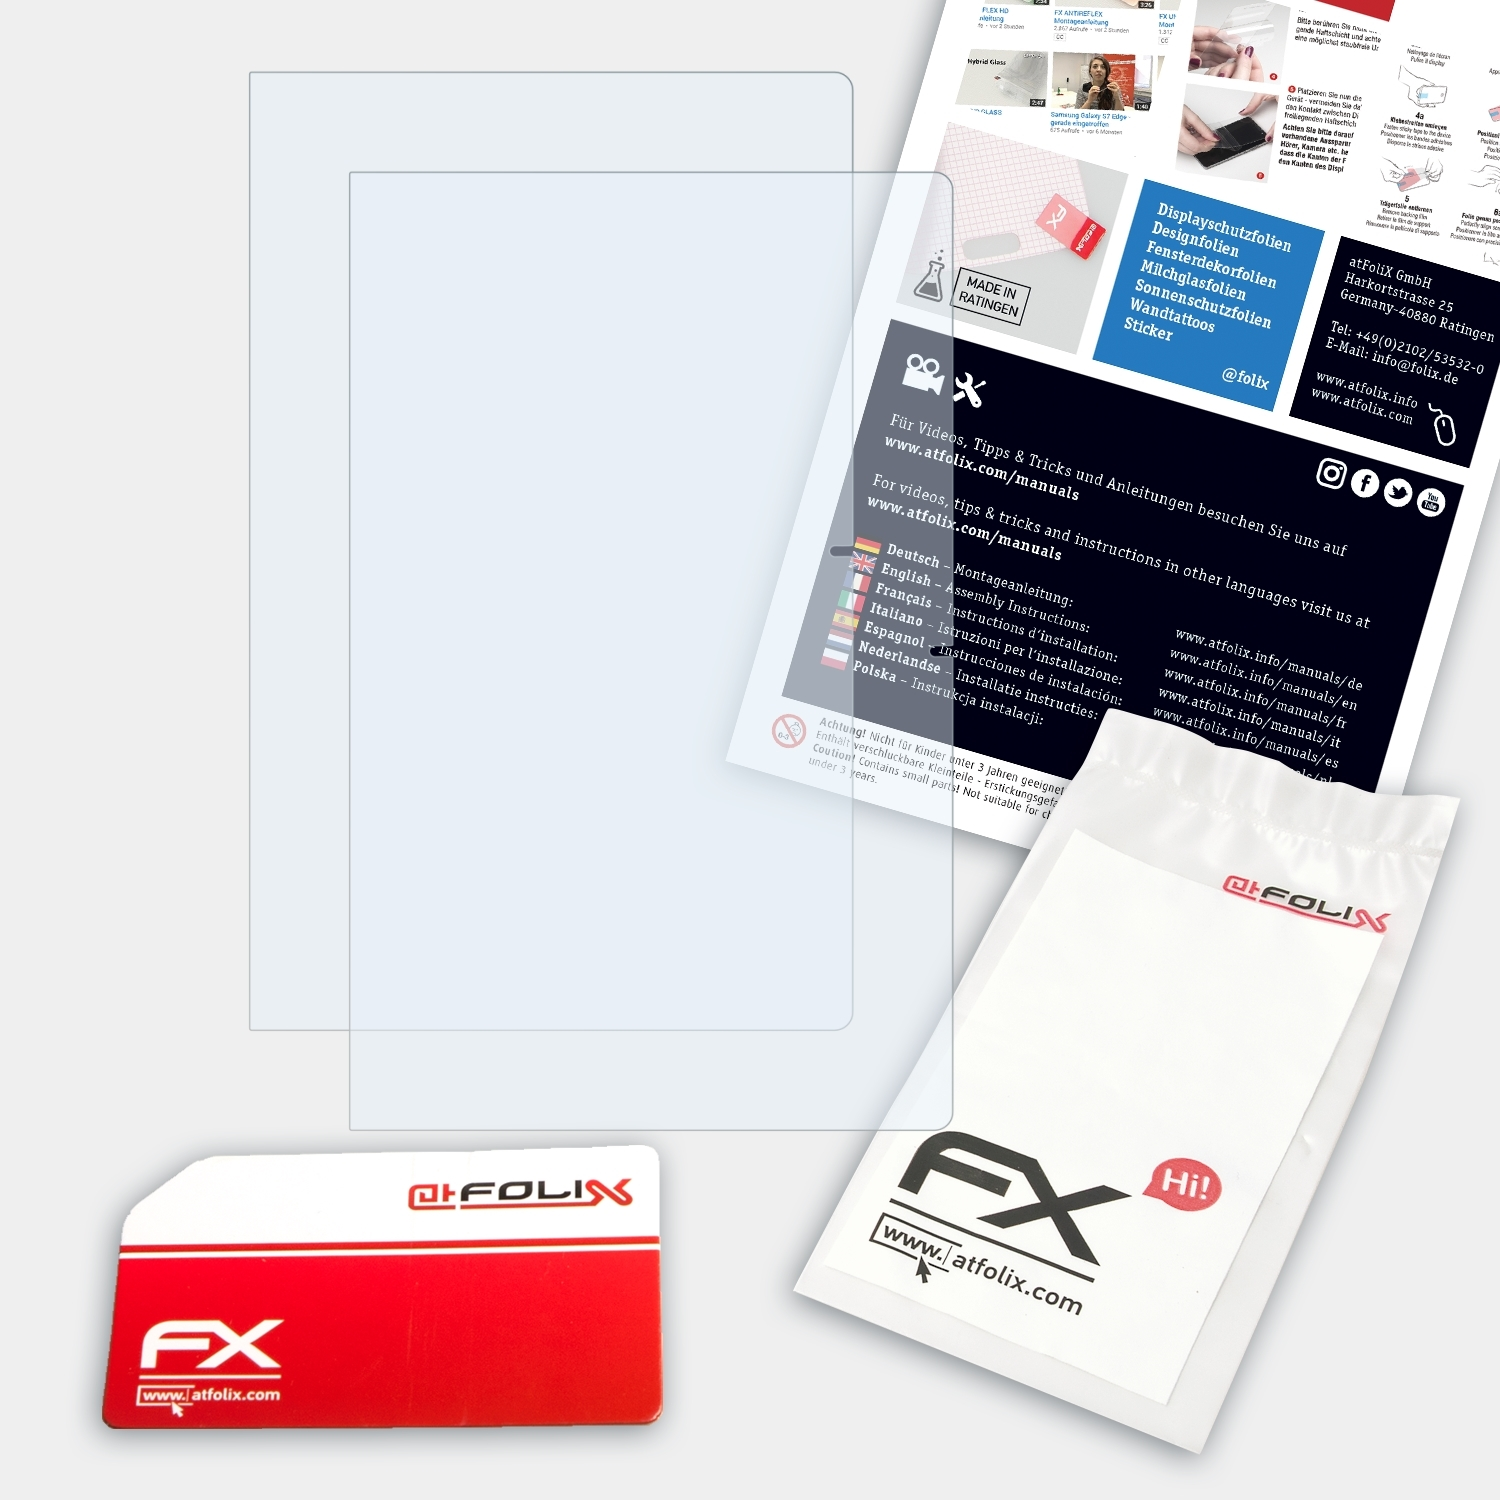 ATFOLIX 2x FX-Clear Primebook C13) Trekstor Displayschutz(für